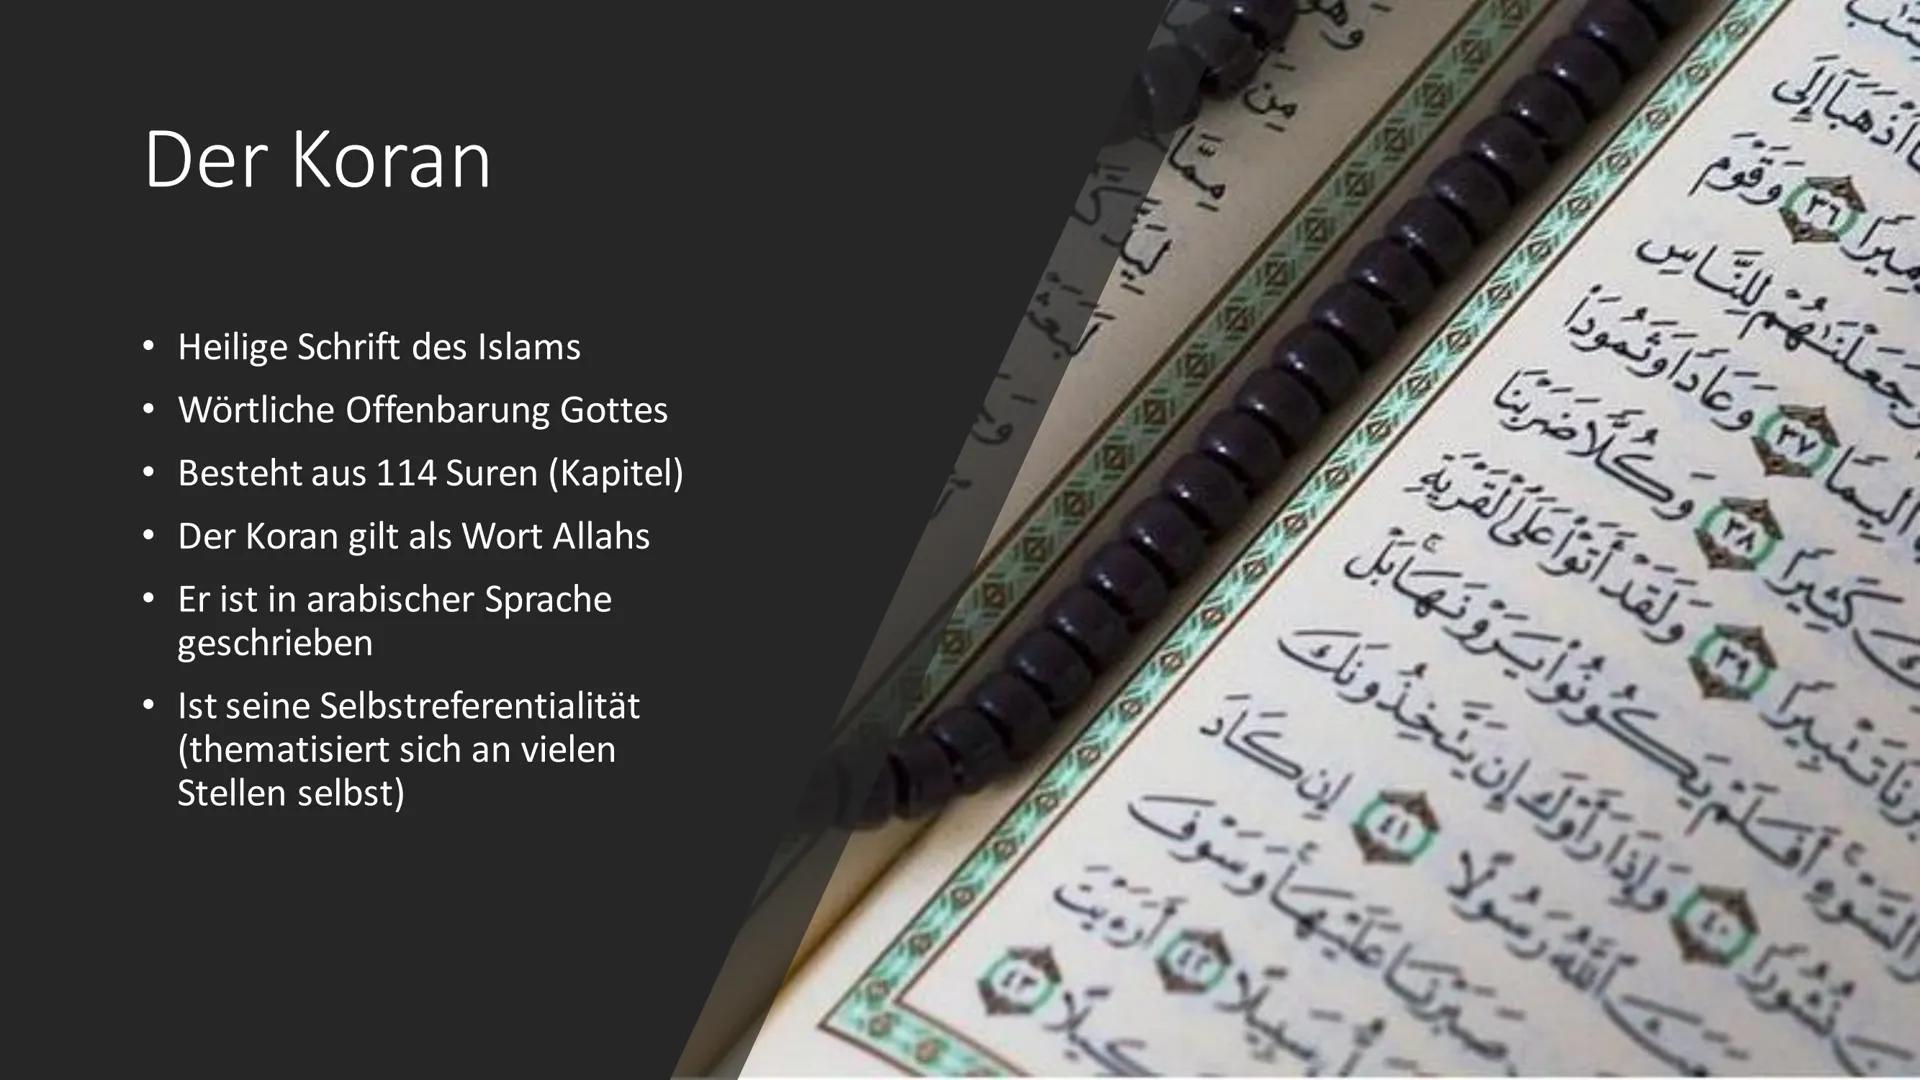 Der Islam
C+ Inhalt
Allgemeines
• Die Entstehung des Islams
Der Gott
• Der Prophet Mohammed
Die 5 Säulen
Die 6 Säulen
Der Koran
• Die Mosche